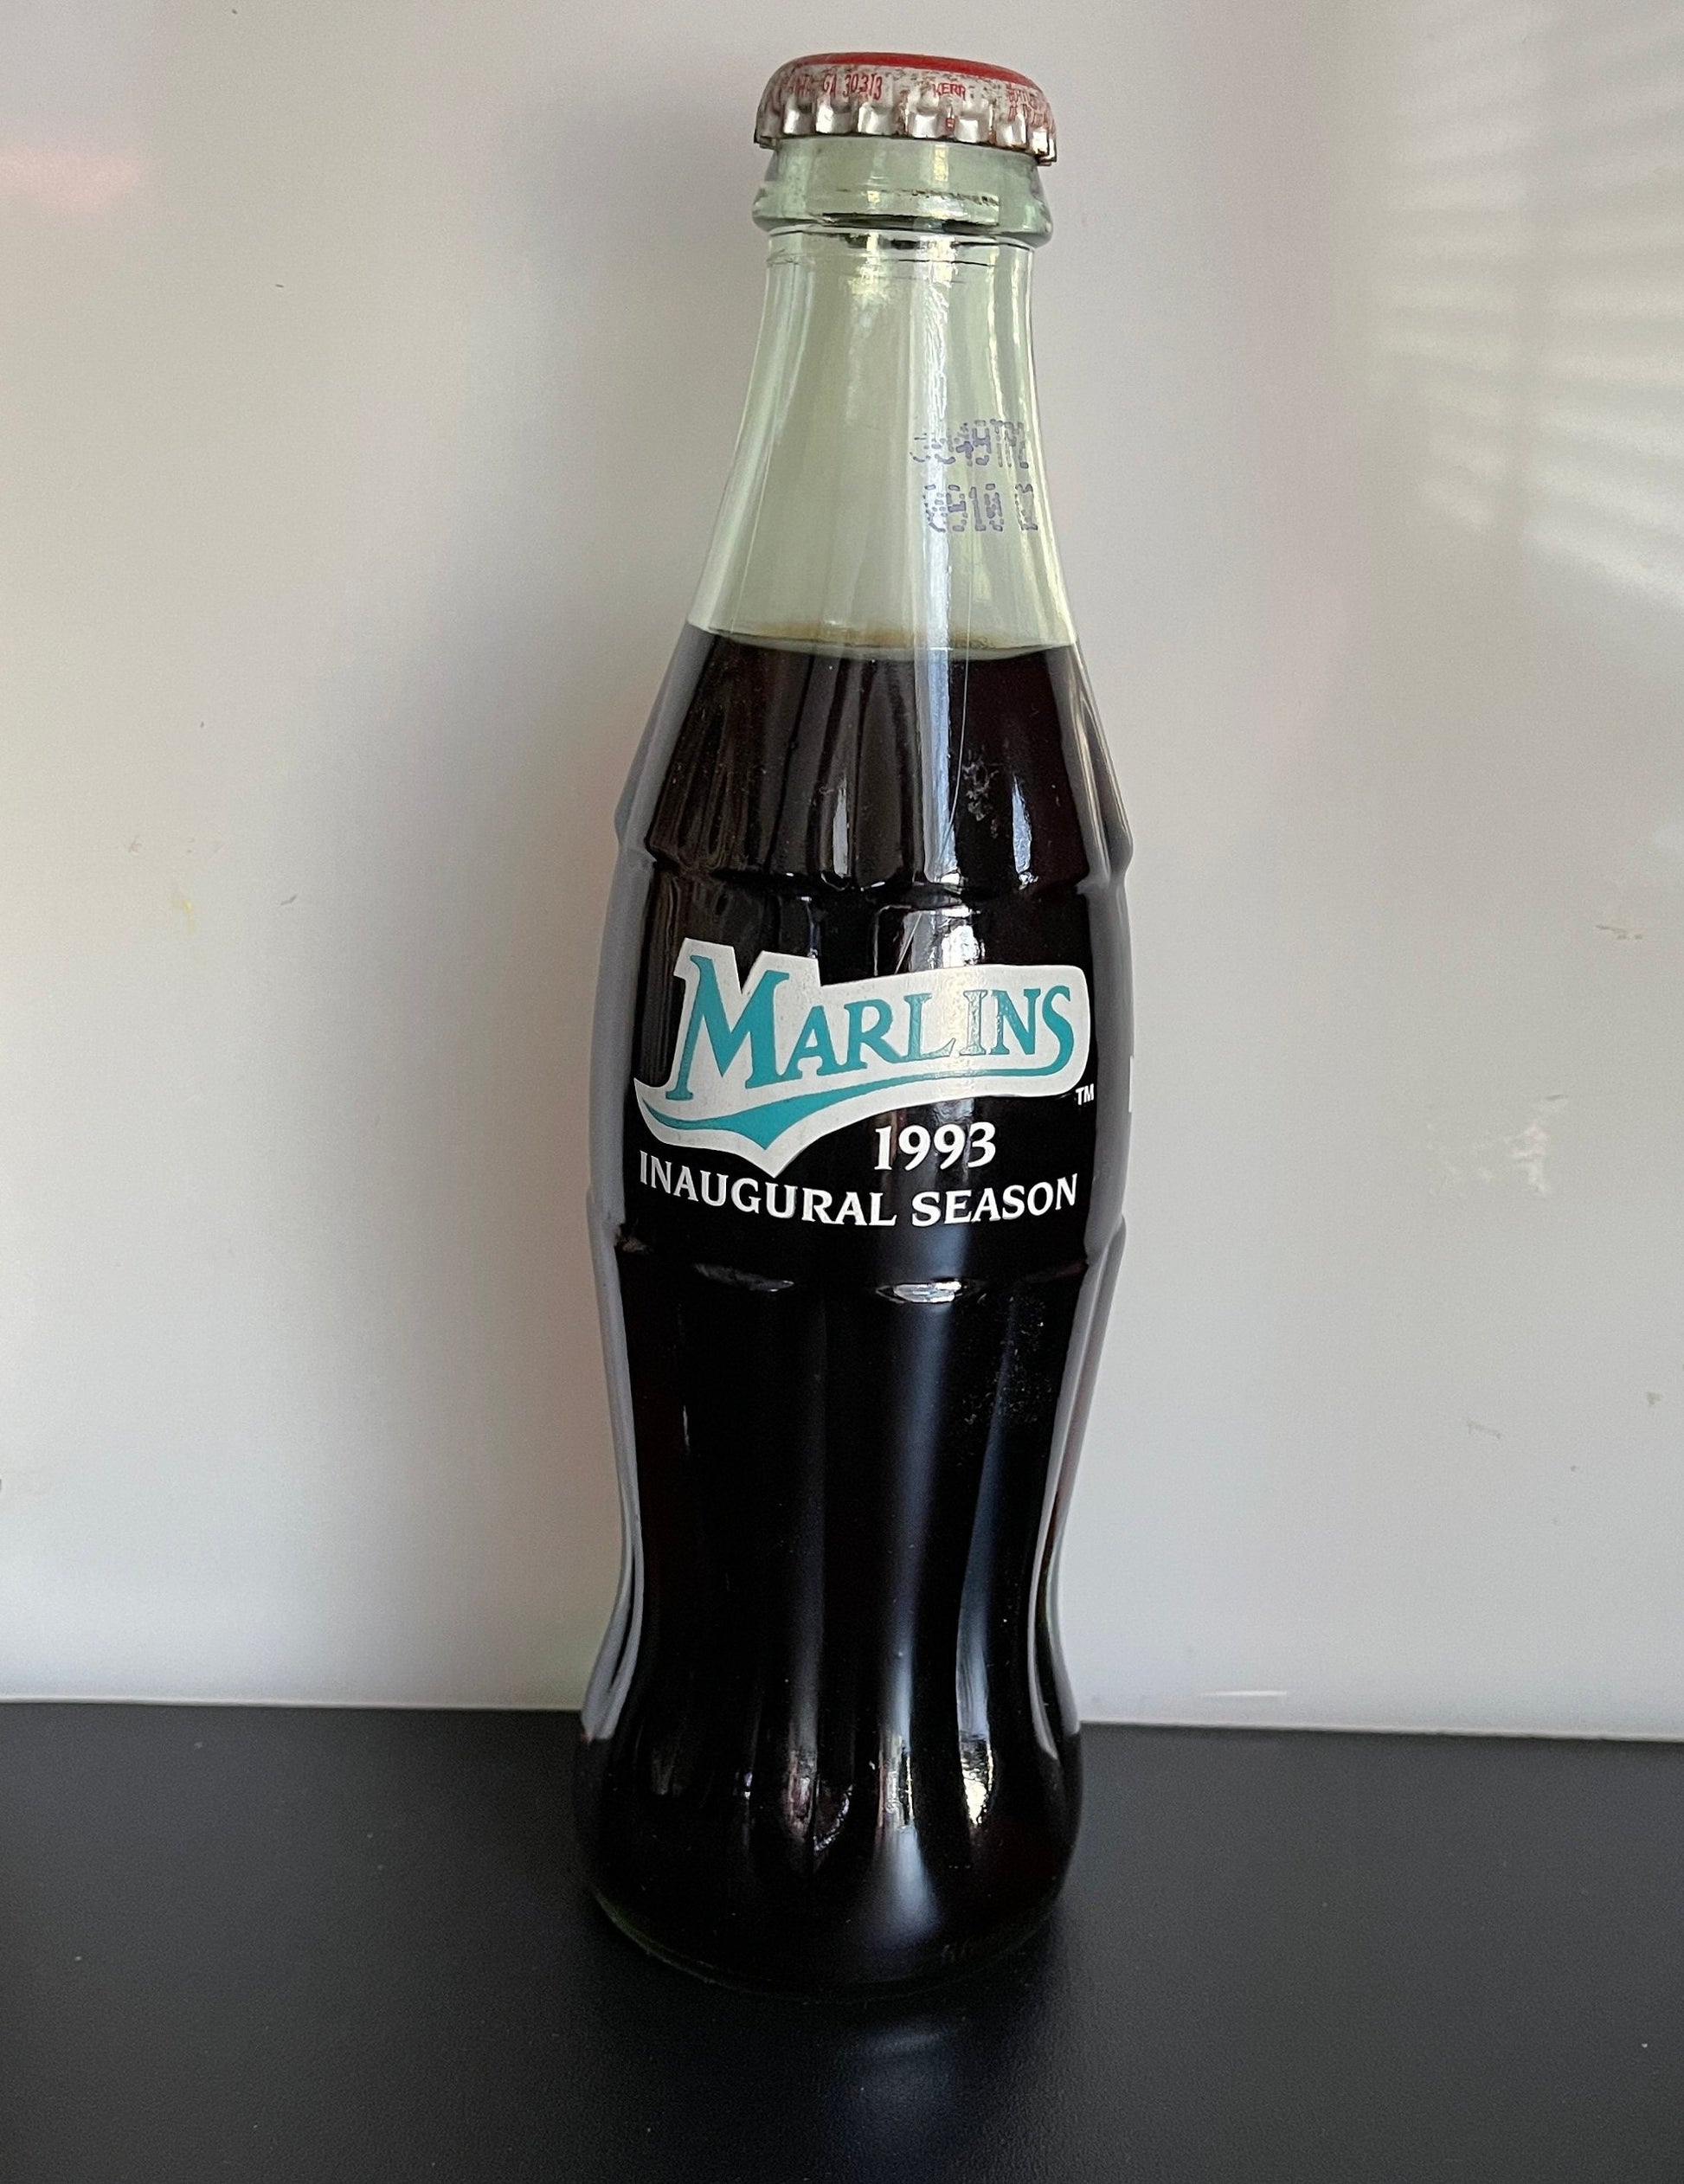 Coca-Cola Marlins 1993 Inaugural Season Coke Bottle Vintage Collectible Sports Memorabilia